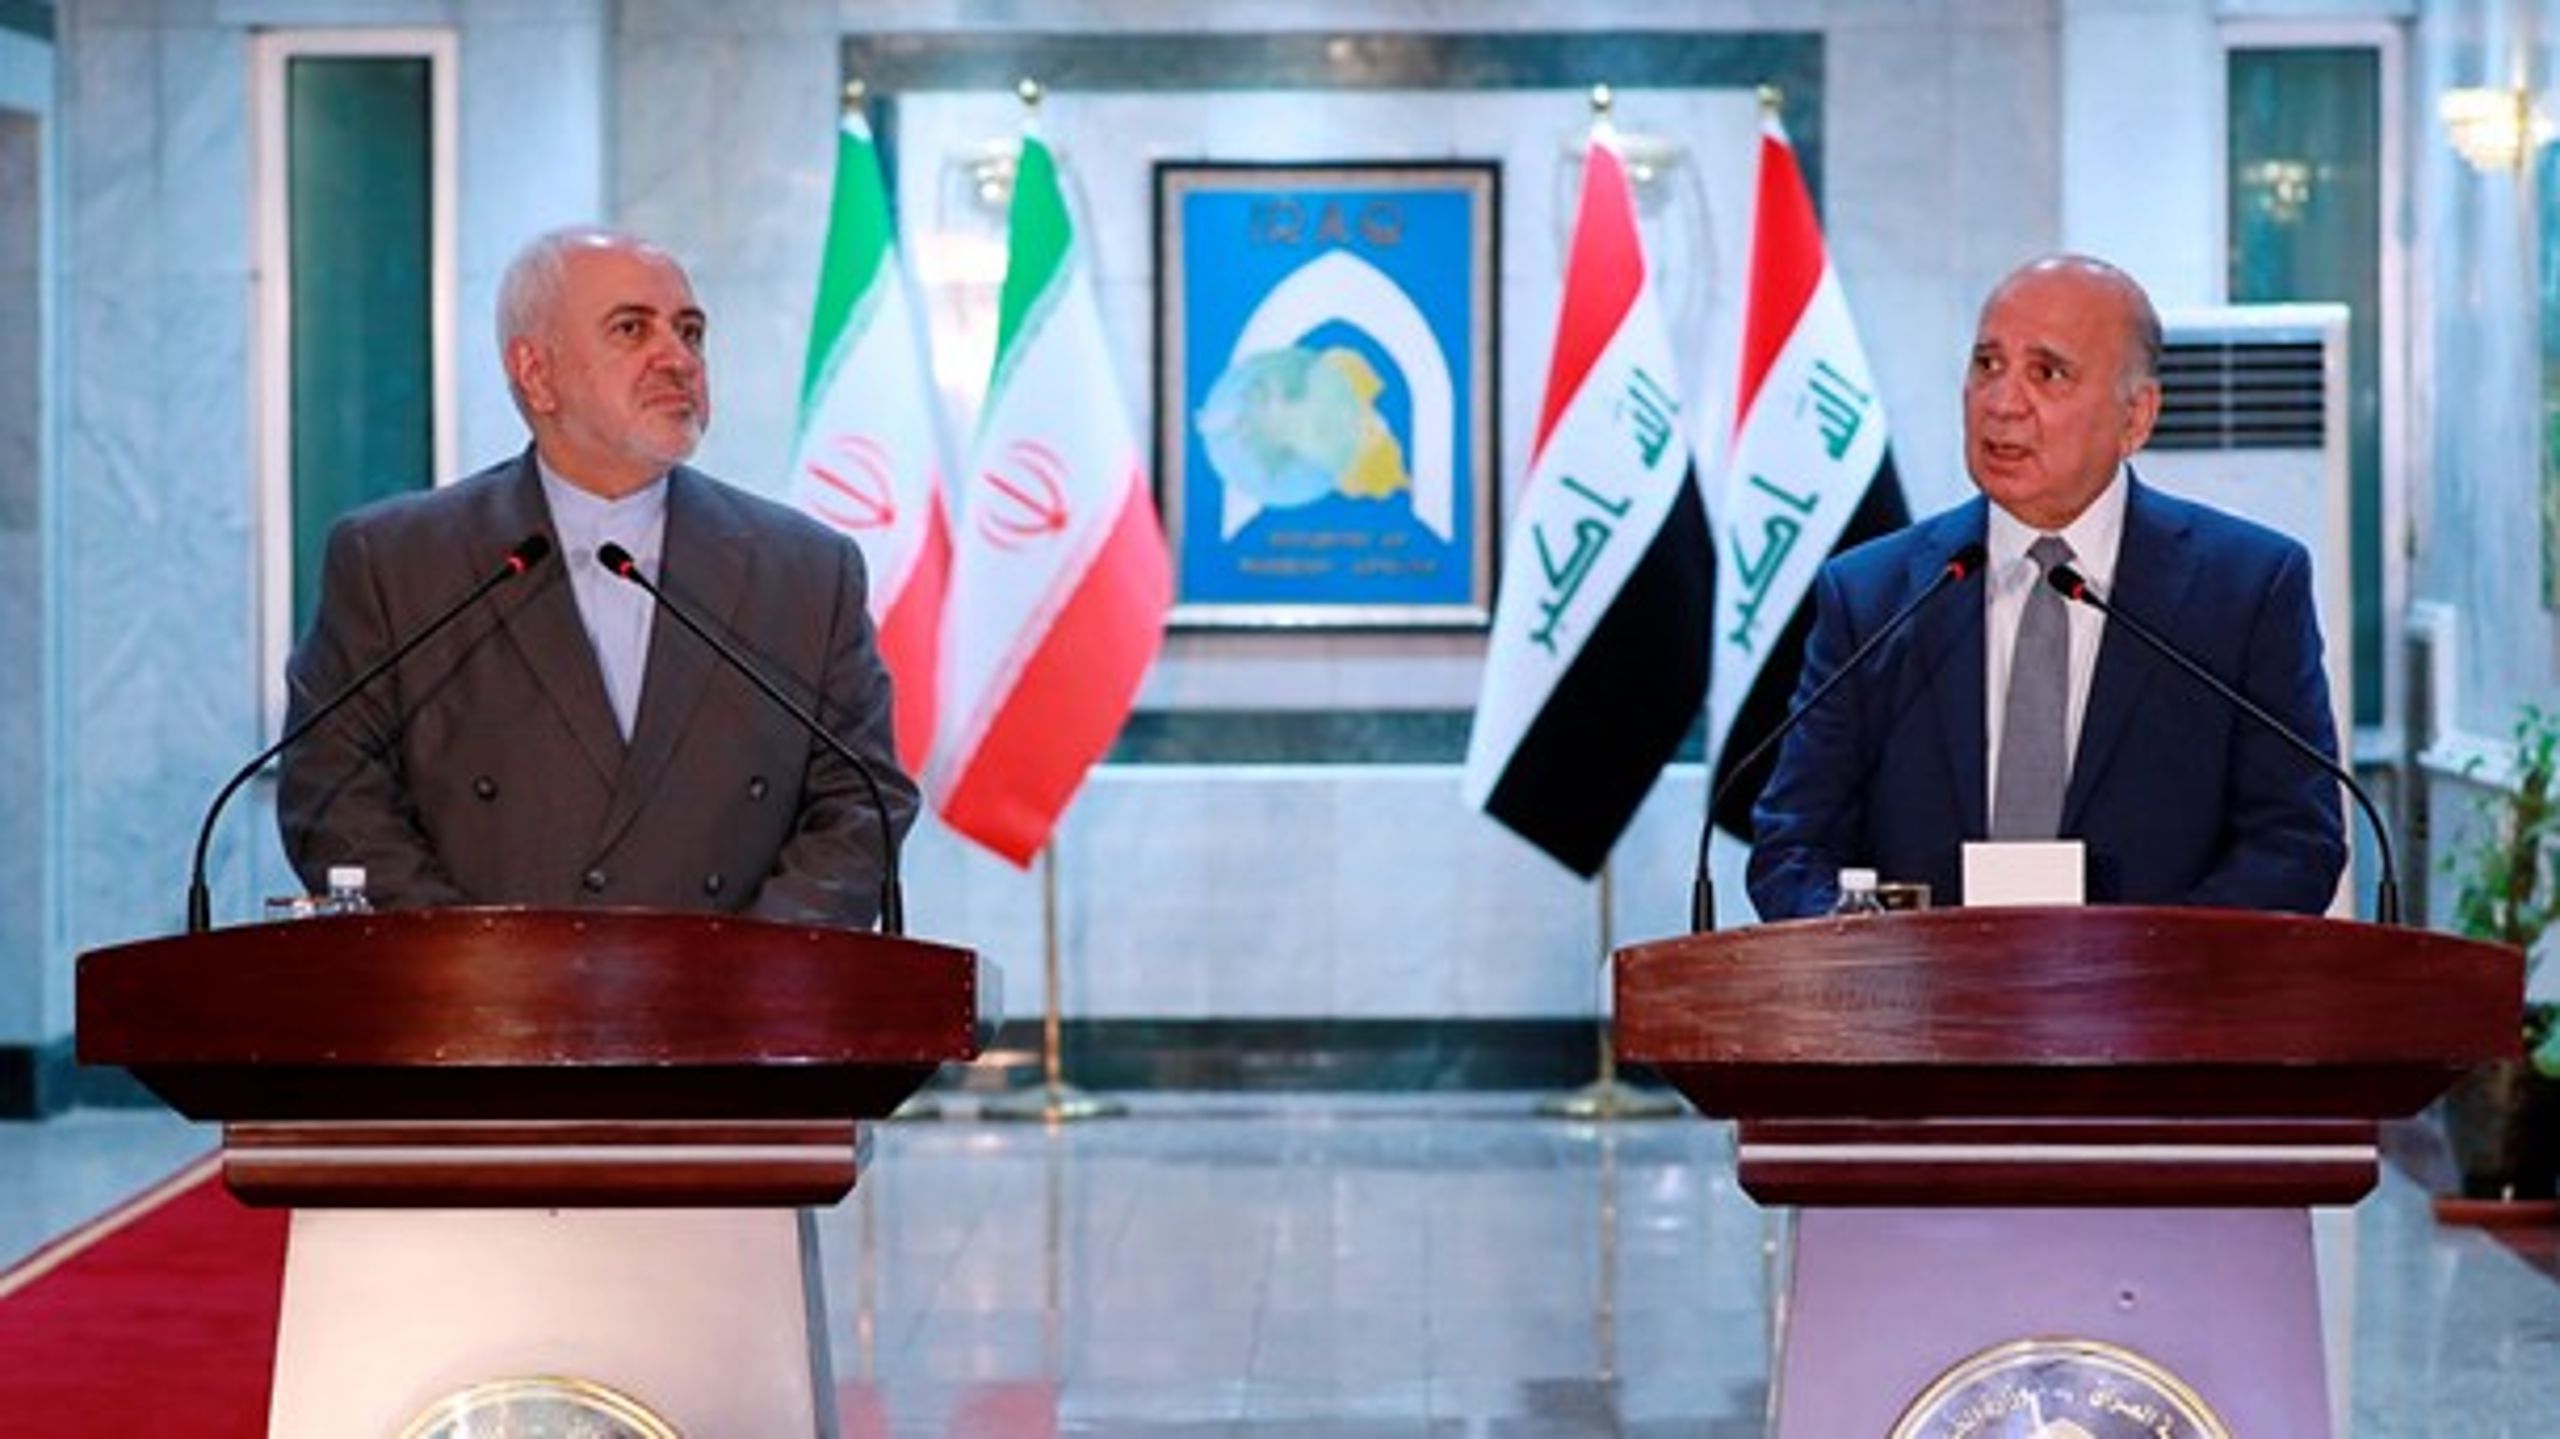 Iraks utrikesminister&nbsp;Fouad Hussein (höger) vid ett besök från Irans utrikesminister Mohammad Javad i juli i år. Två länder där tillvaron varit svår för mandéer.&nbsp;